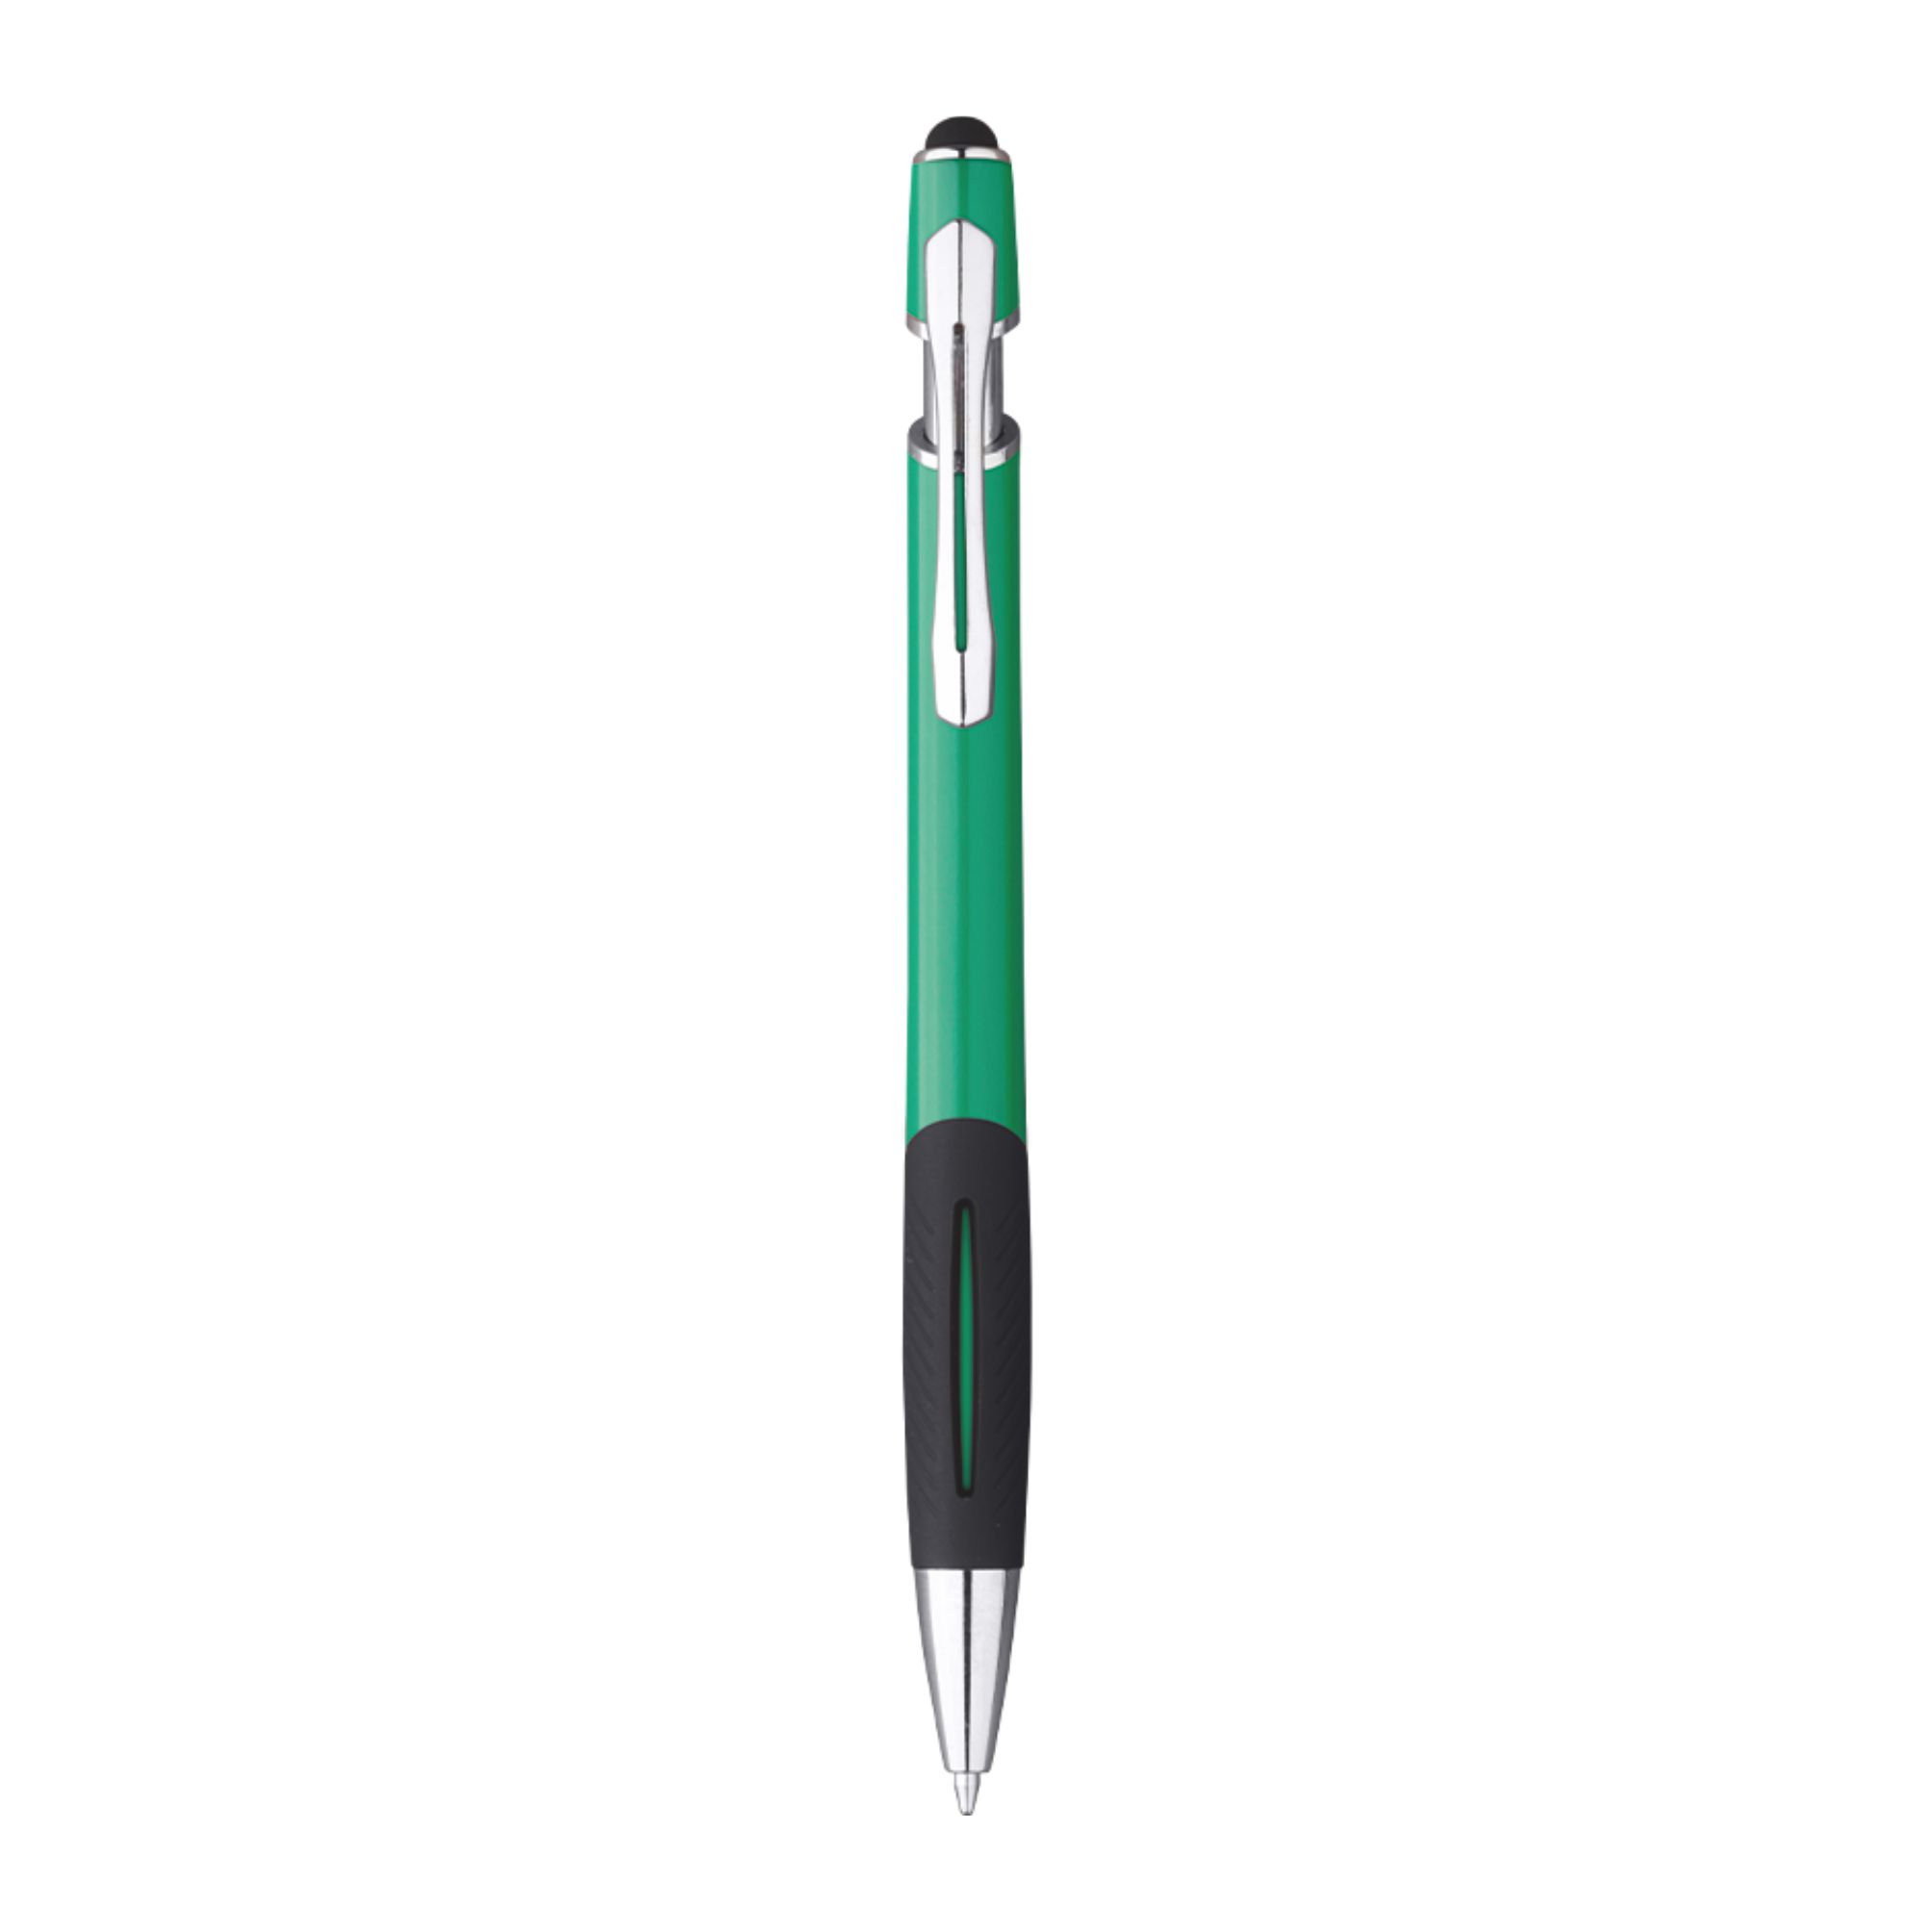 5051-tazio-penna-sfera-con-touch-verde.jpg